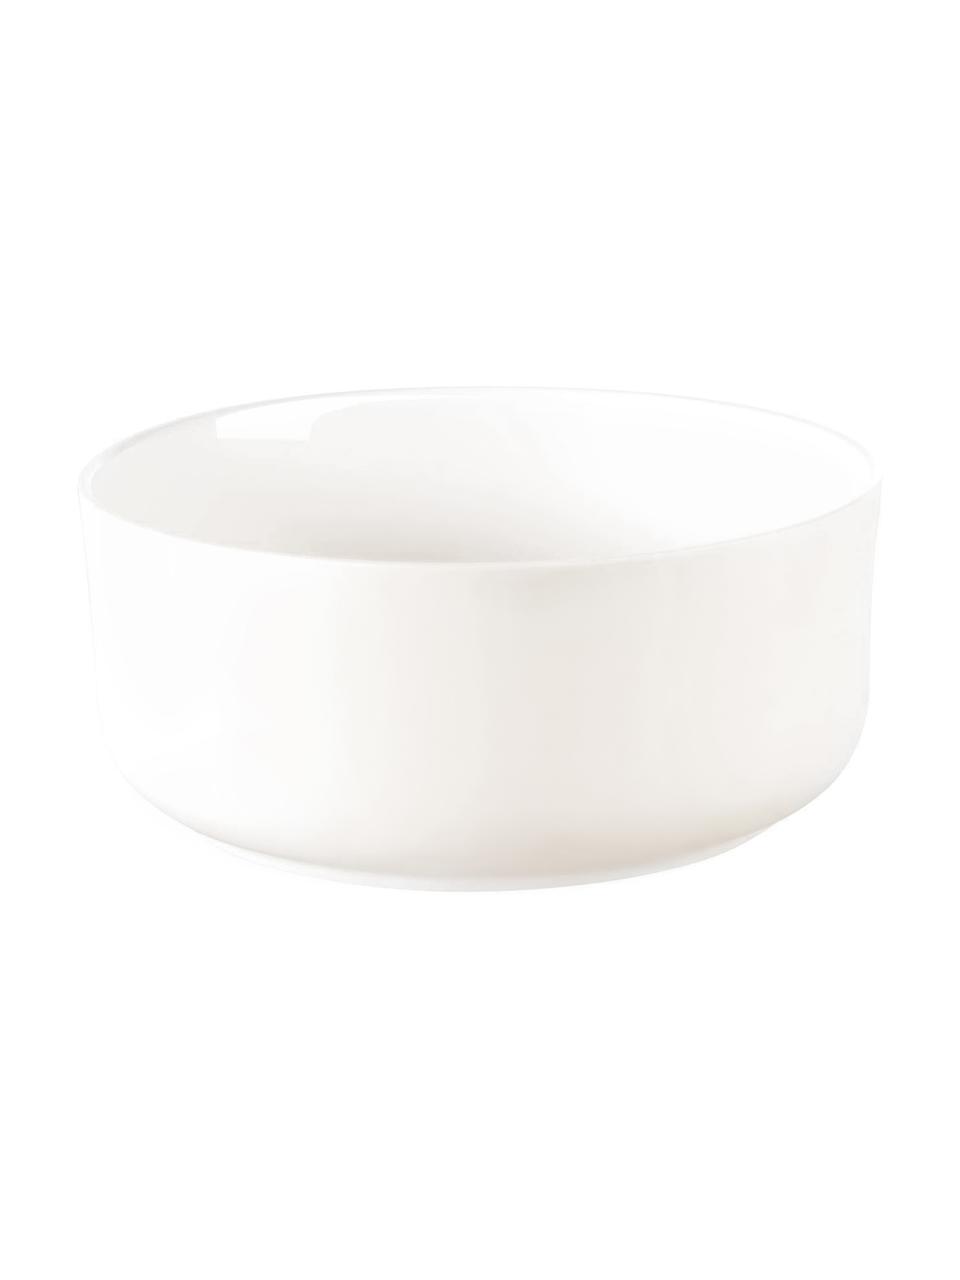 Cuencos pequeños de porcelana Oco, 6 uds., Porcelana Fine Bone China (fina de hueso)
Fine Bone China es una pasta de porcelana fosfática que se caracteriza por su brillo radiante y translúcido, Marfil, Ø 12 cm